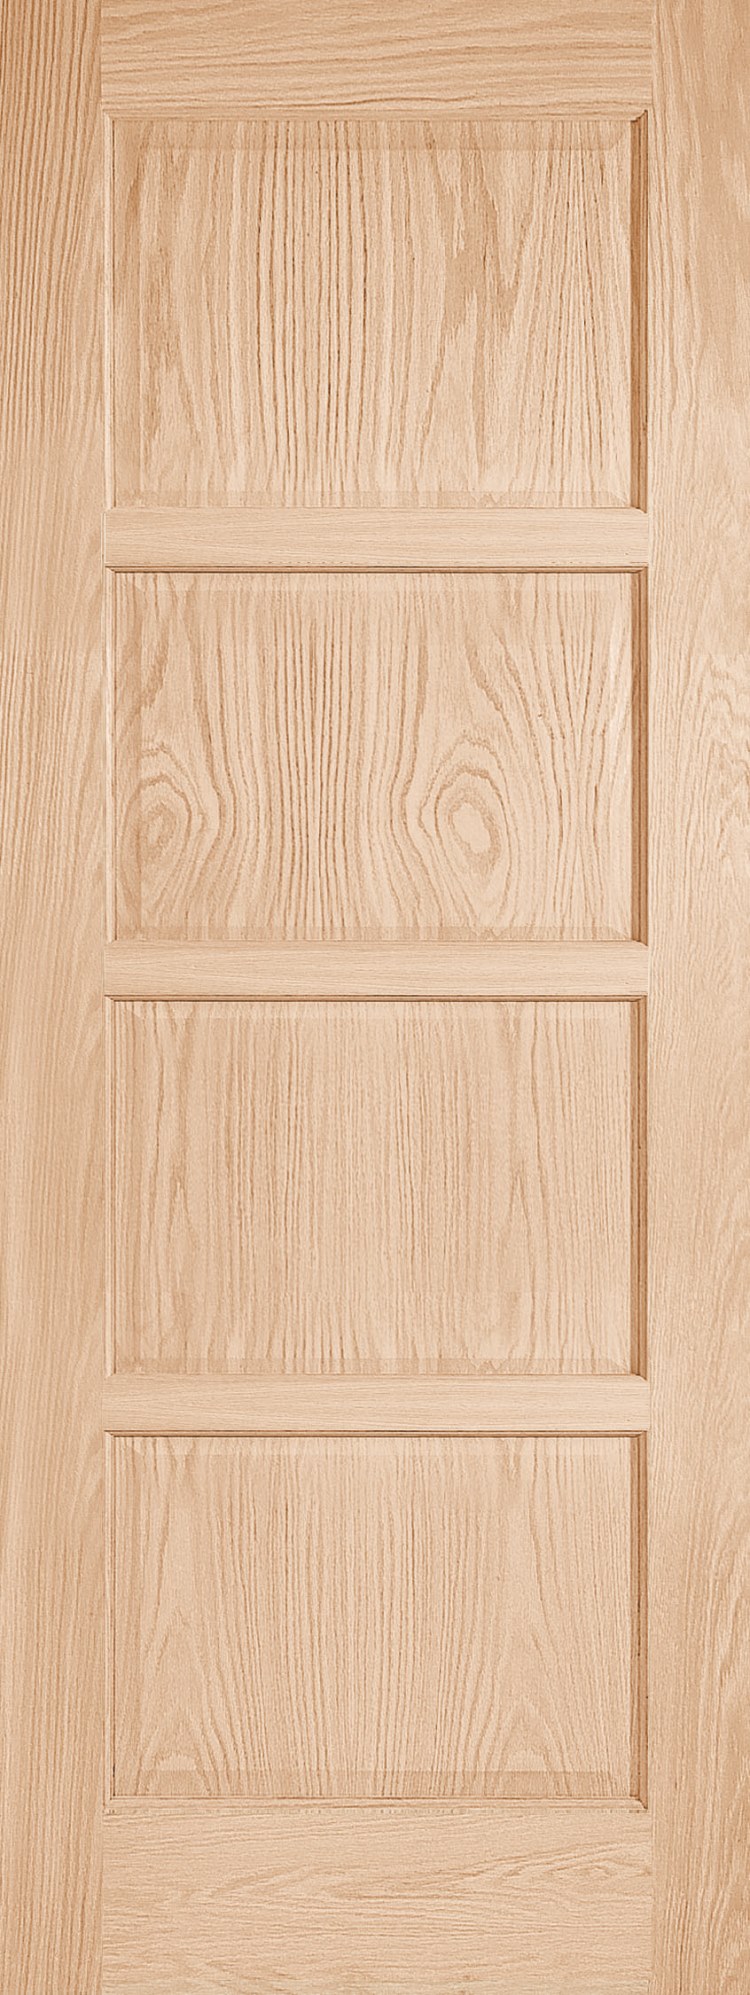 204L Jeld-Wen interior solid wood 4 panel door